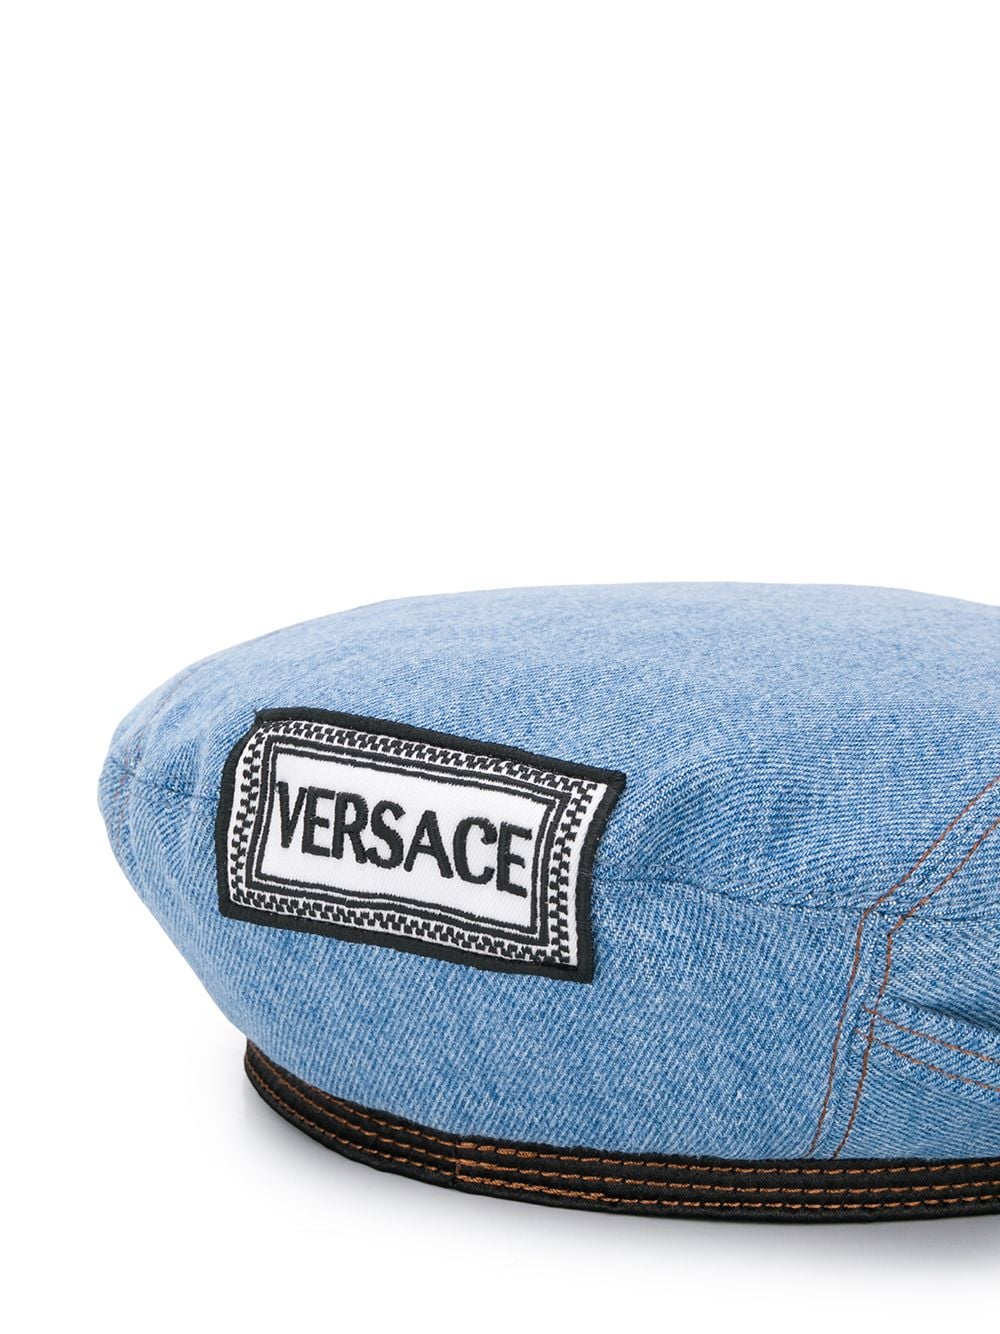 Versace Denim beret $213 - Shop SS19 